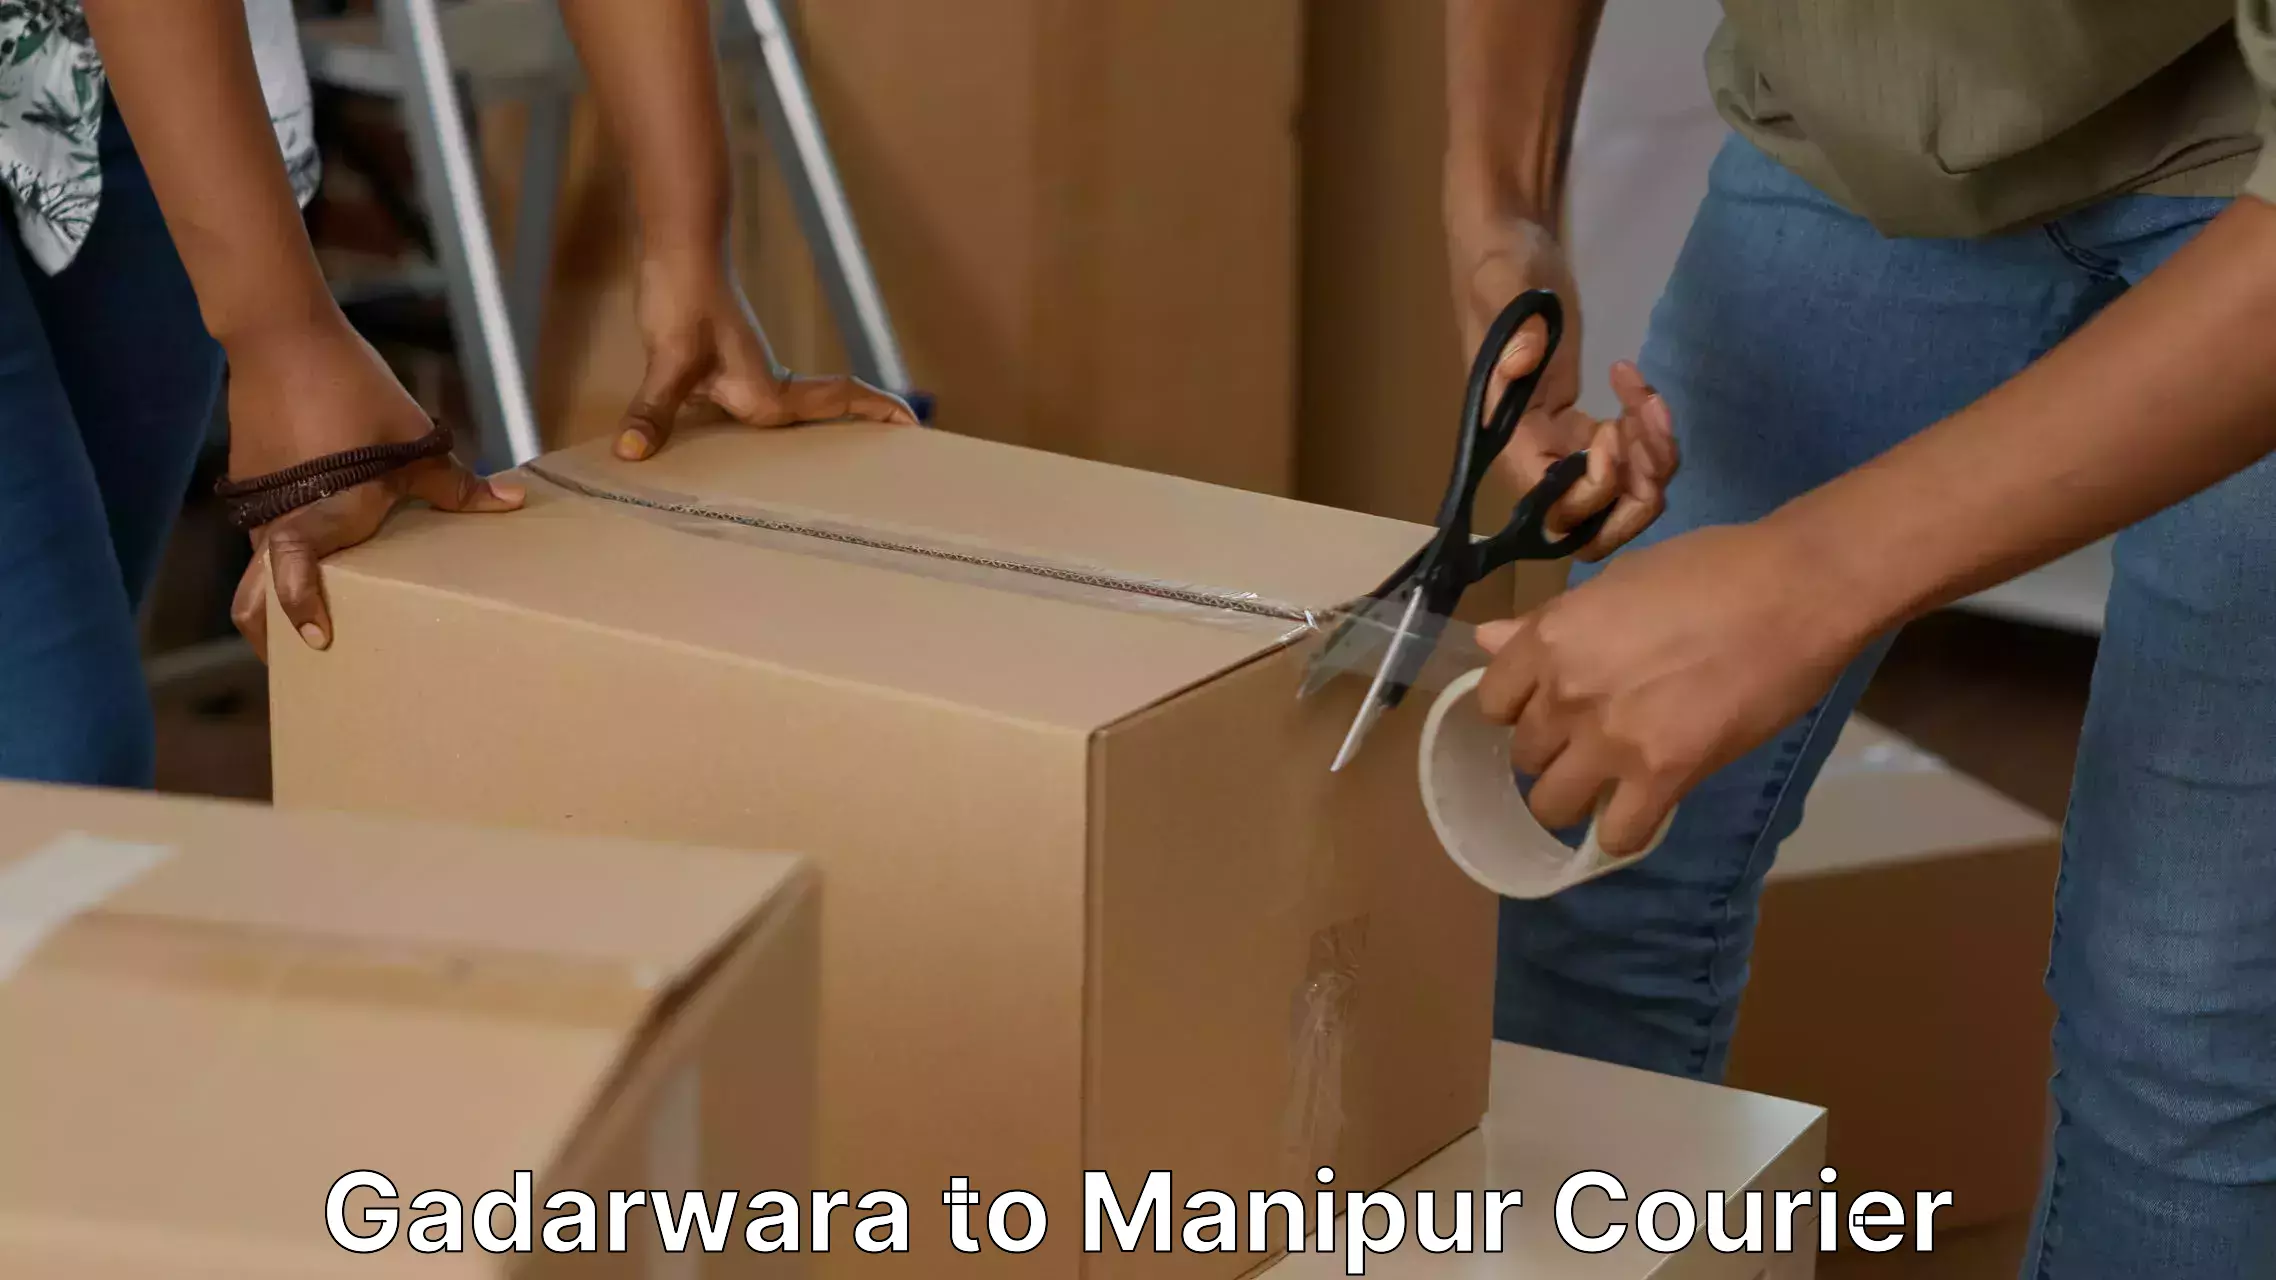 Professional packing services Gadarwara to NIT Manipur